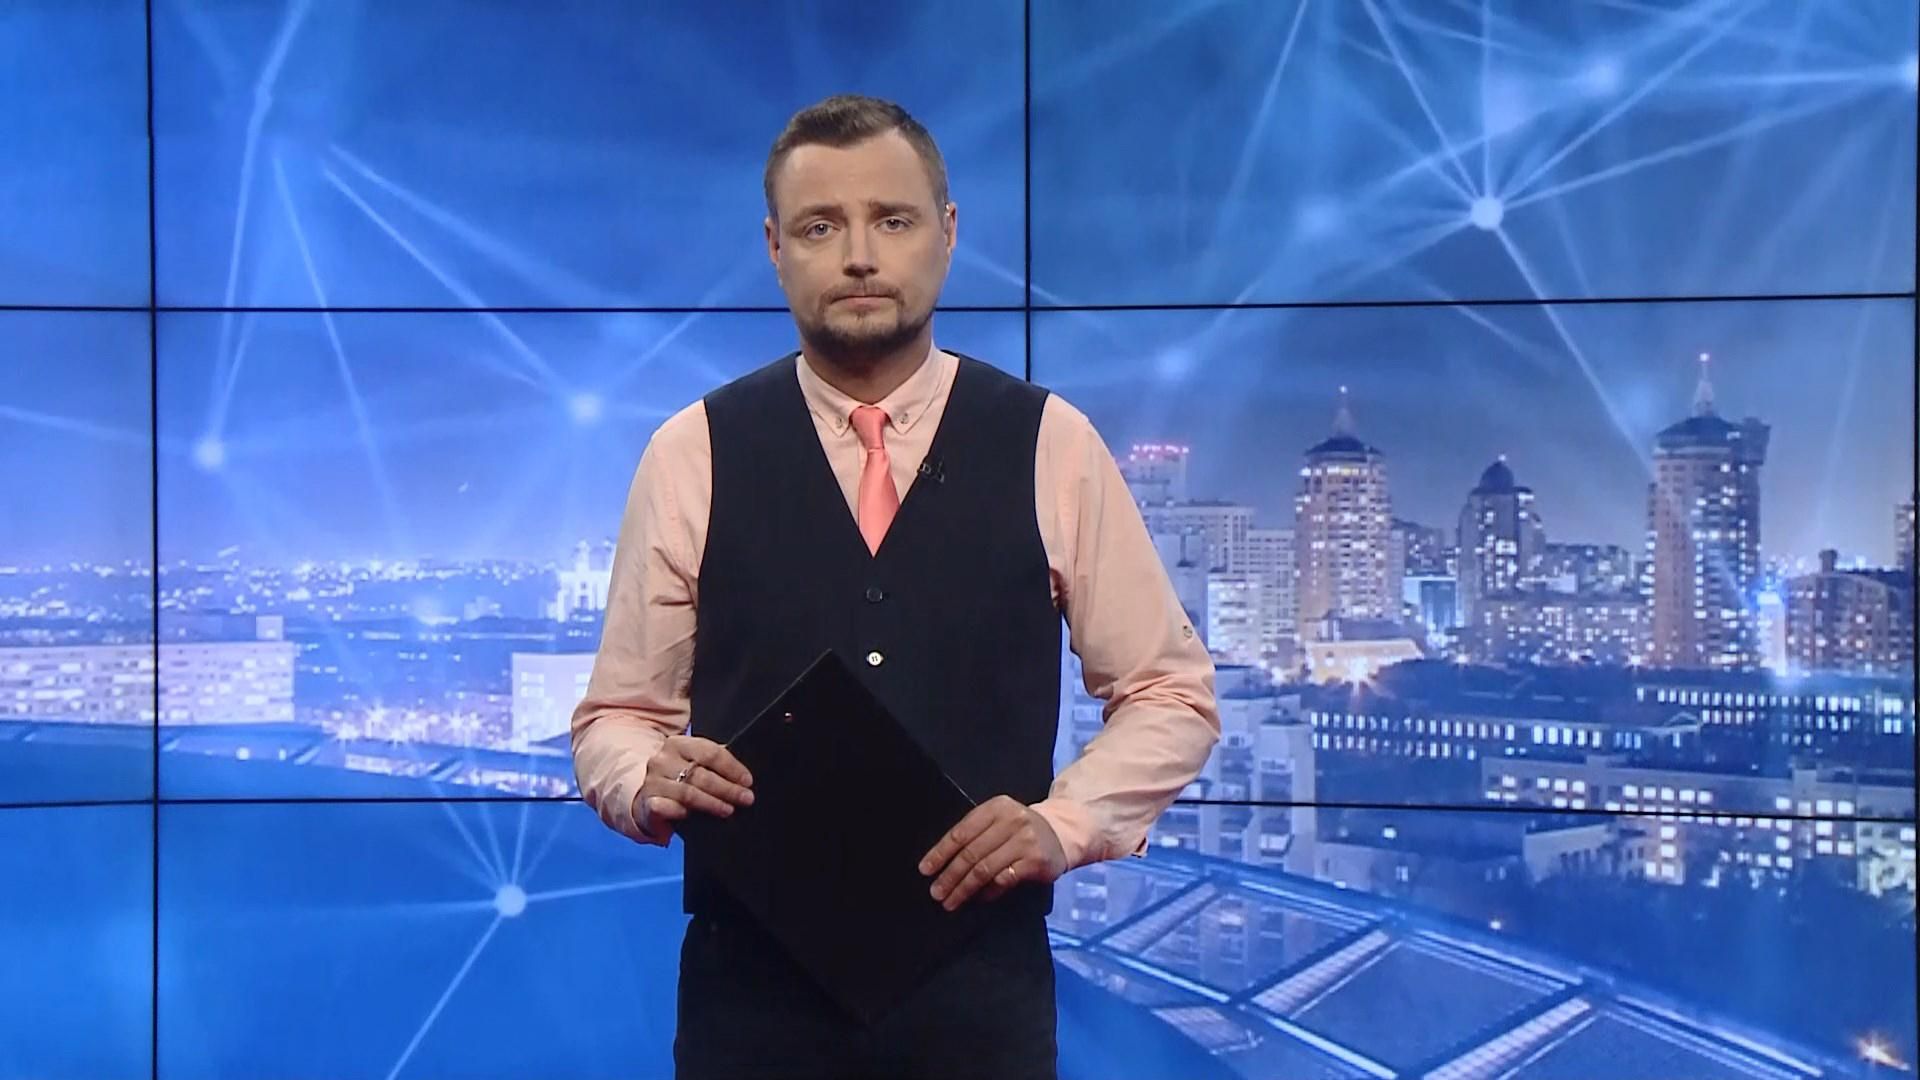 Випуск новин за 19:00: Скандальна заява Арахамії про воду в Крим. Перейменування станції метро